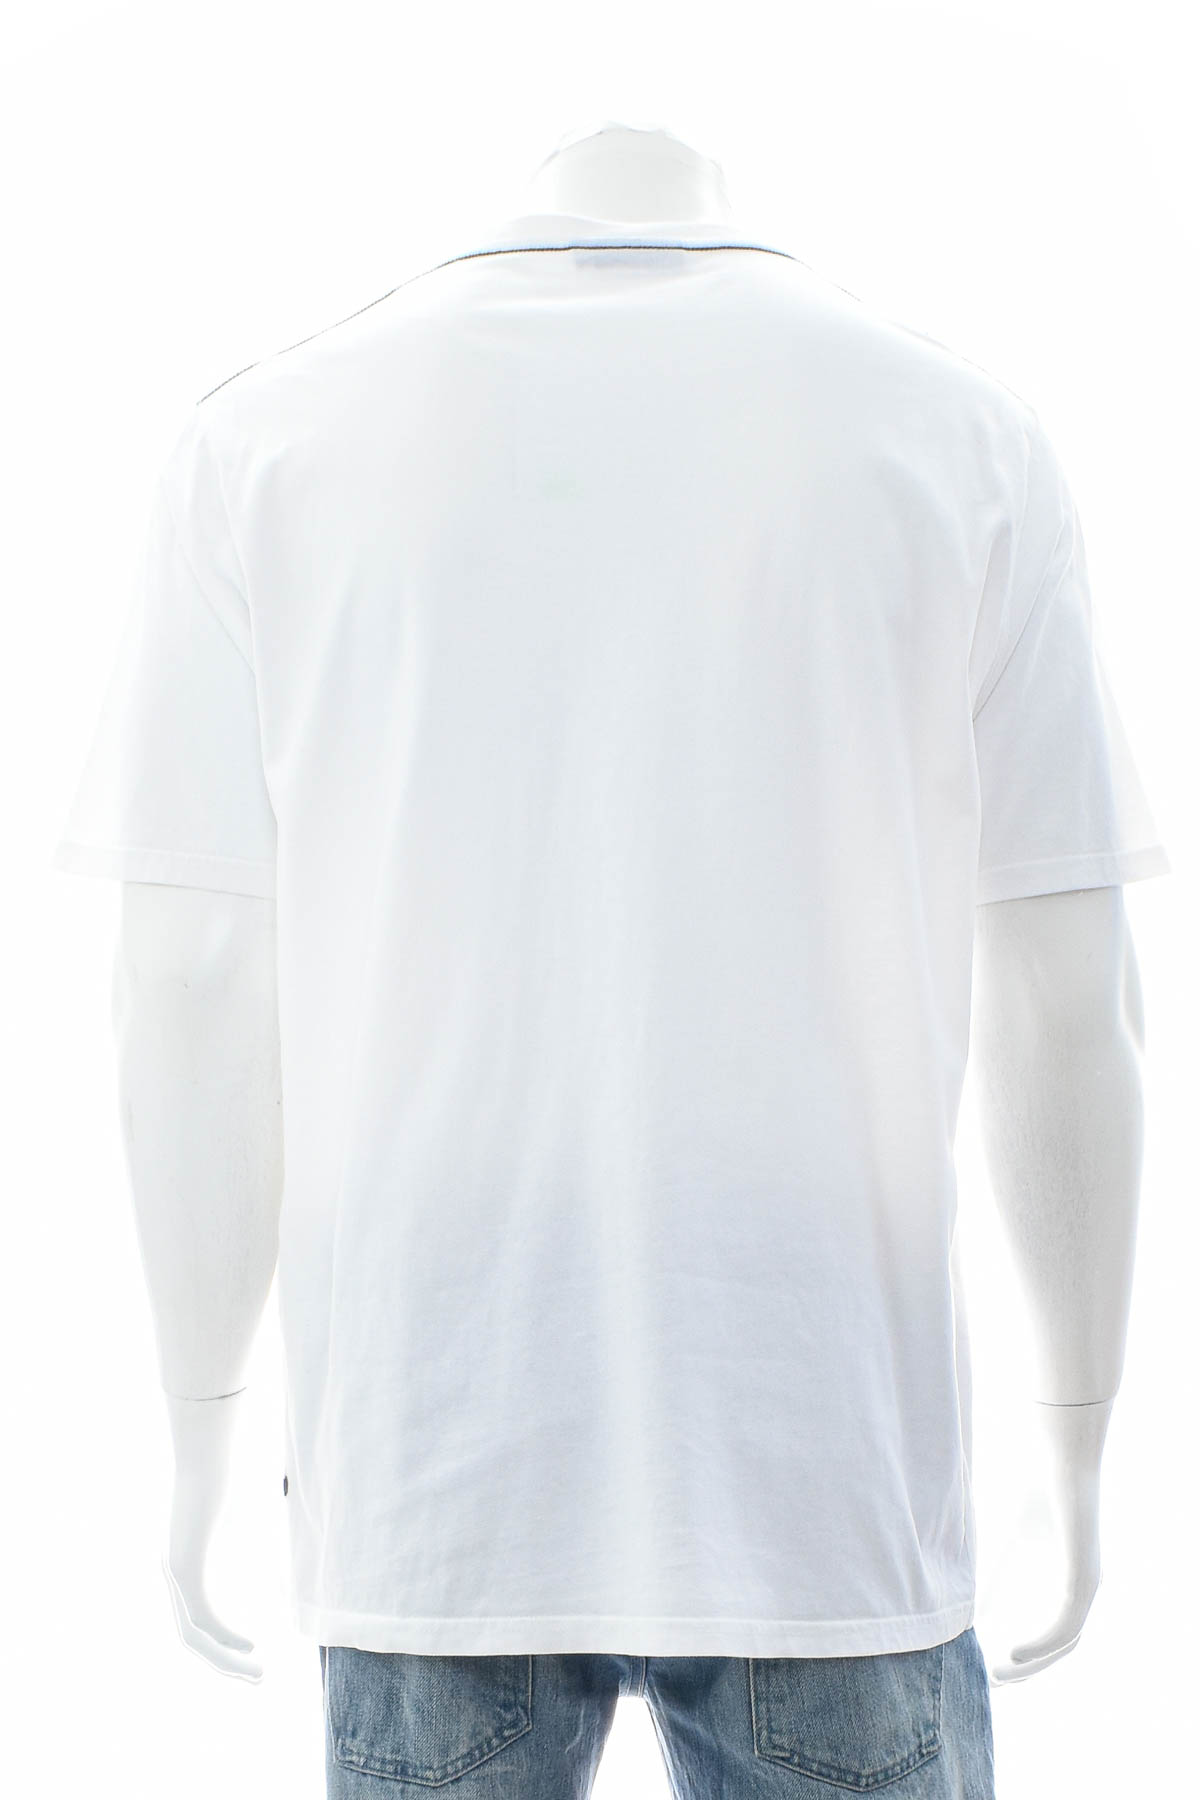 Ανδρικό μπλουζάκι - Paul R. Smith - 1